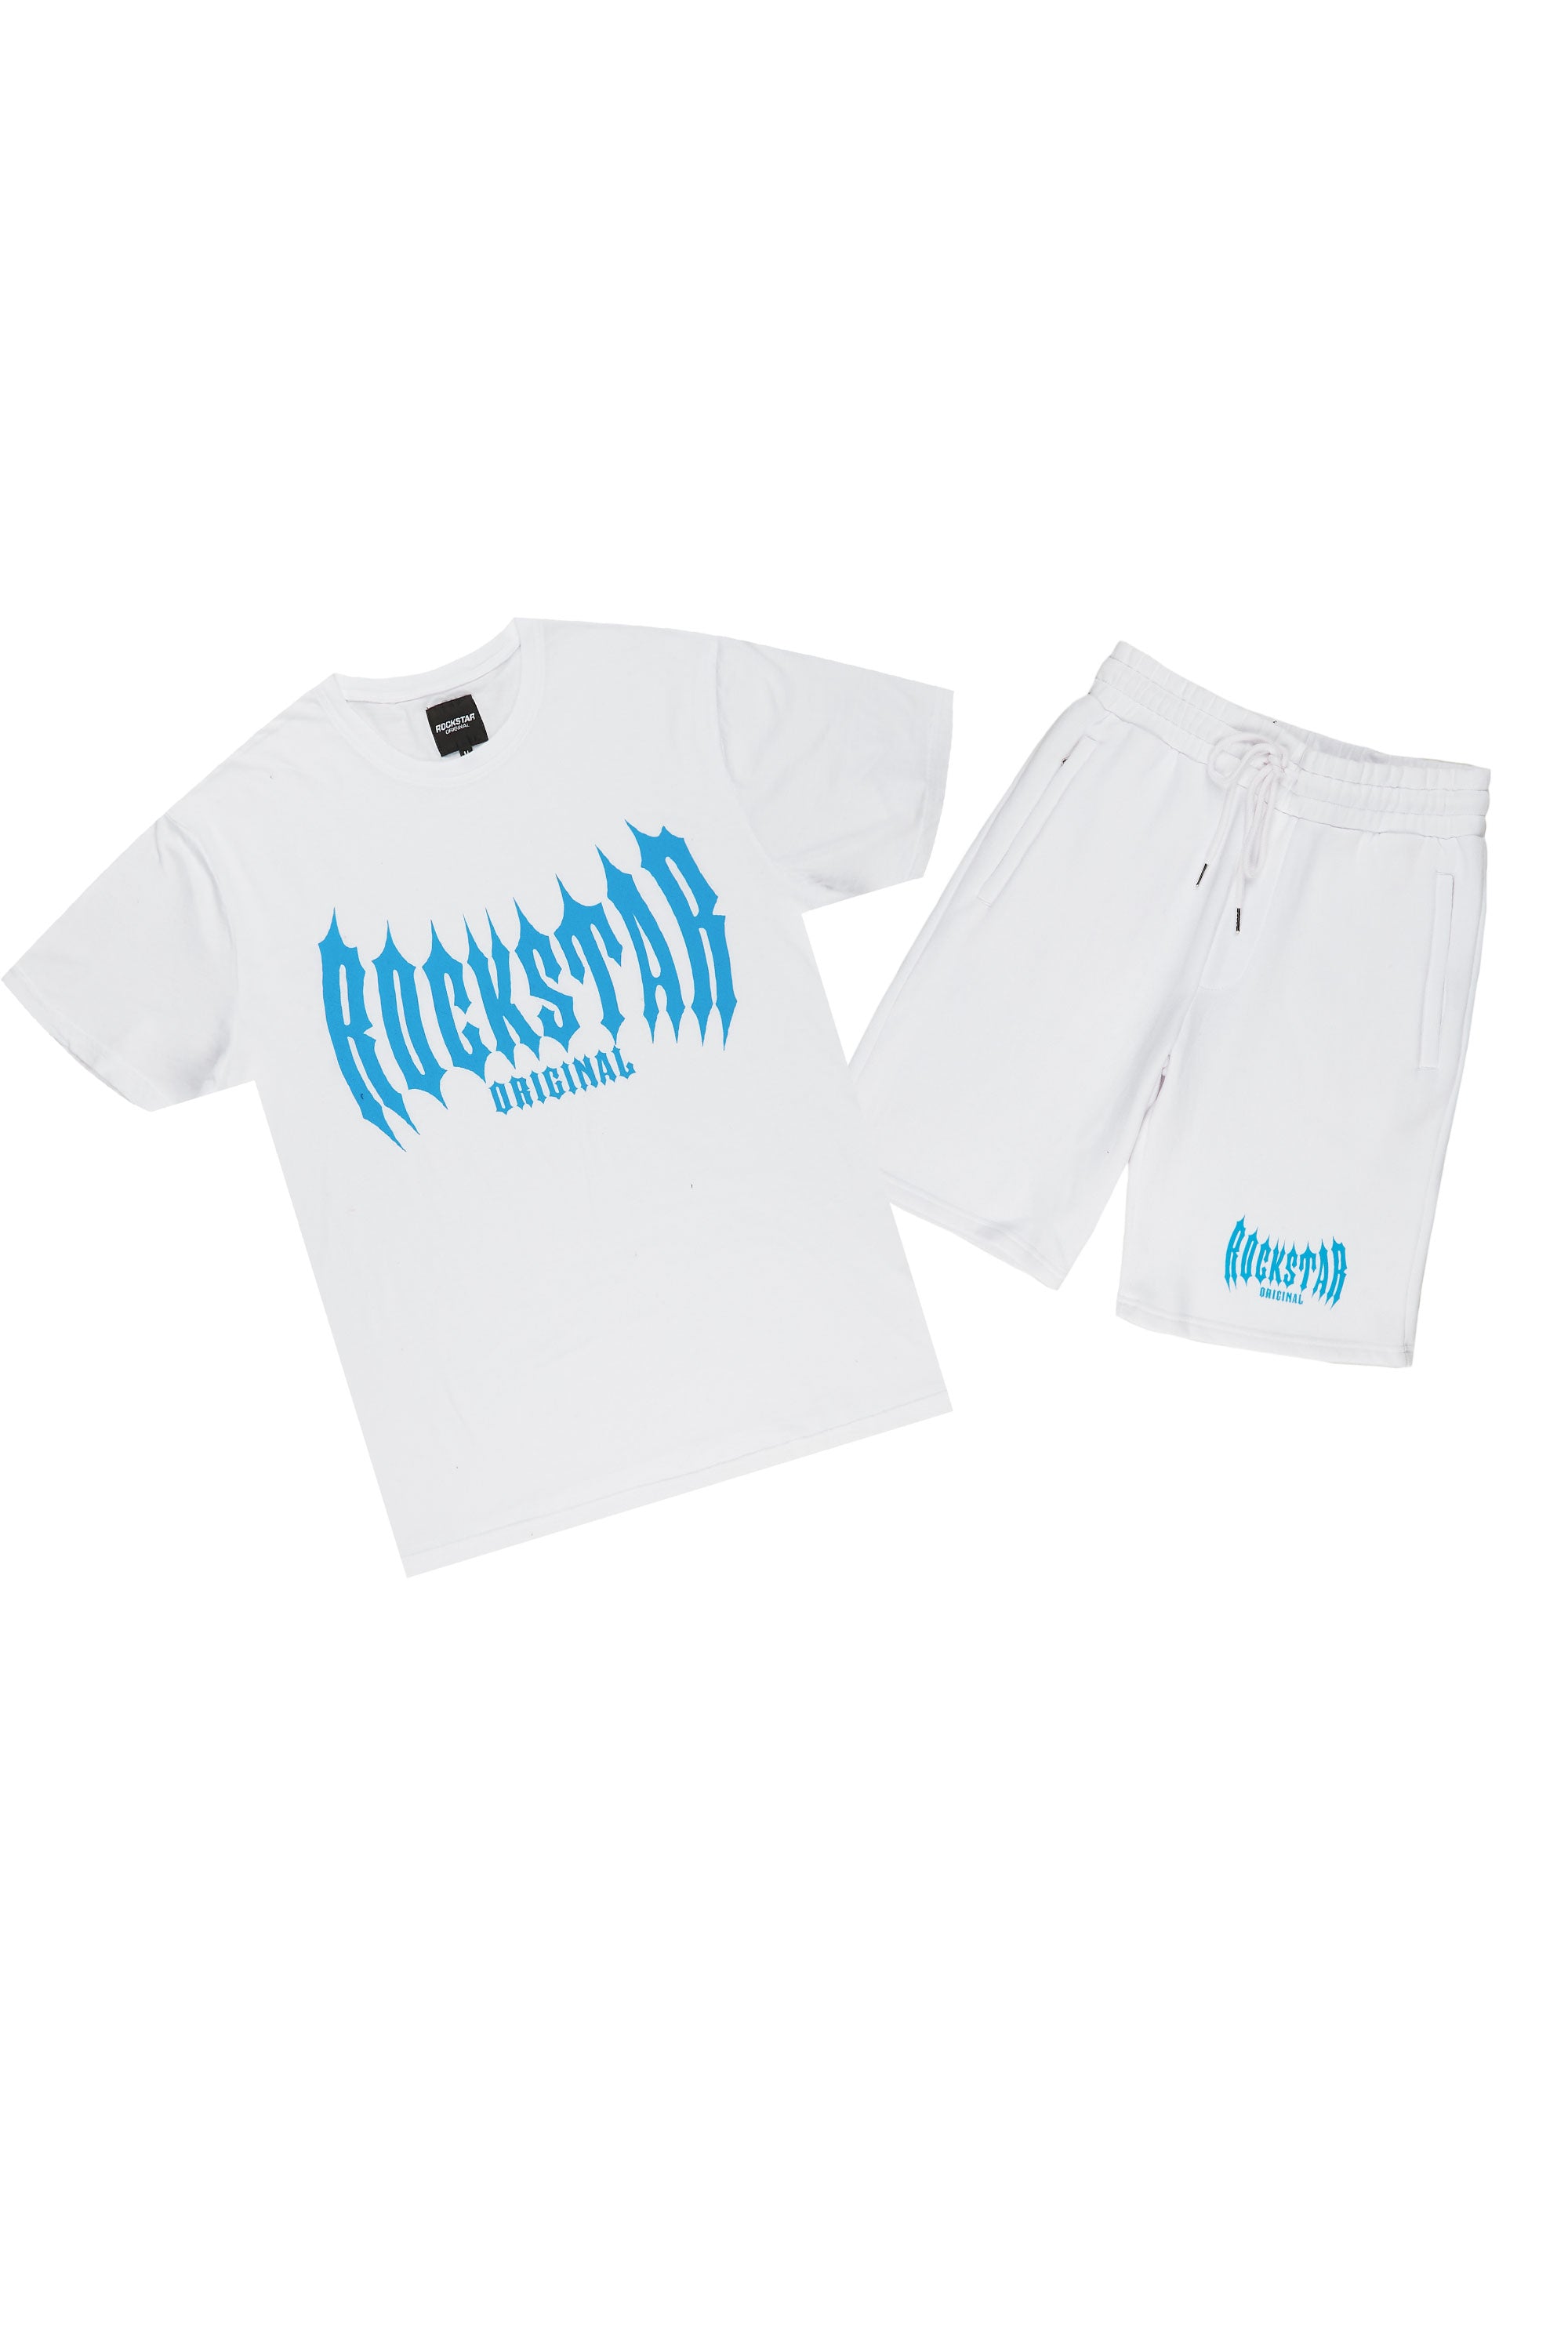 Skeller White T-Shirt Short Set